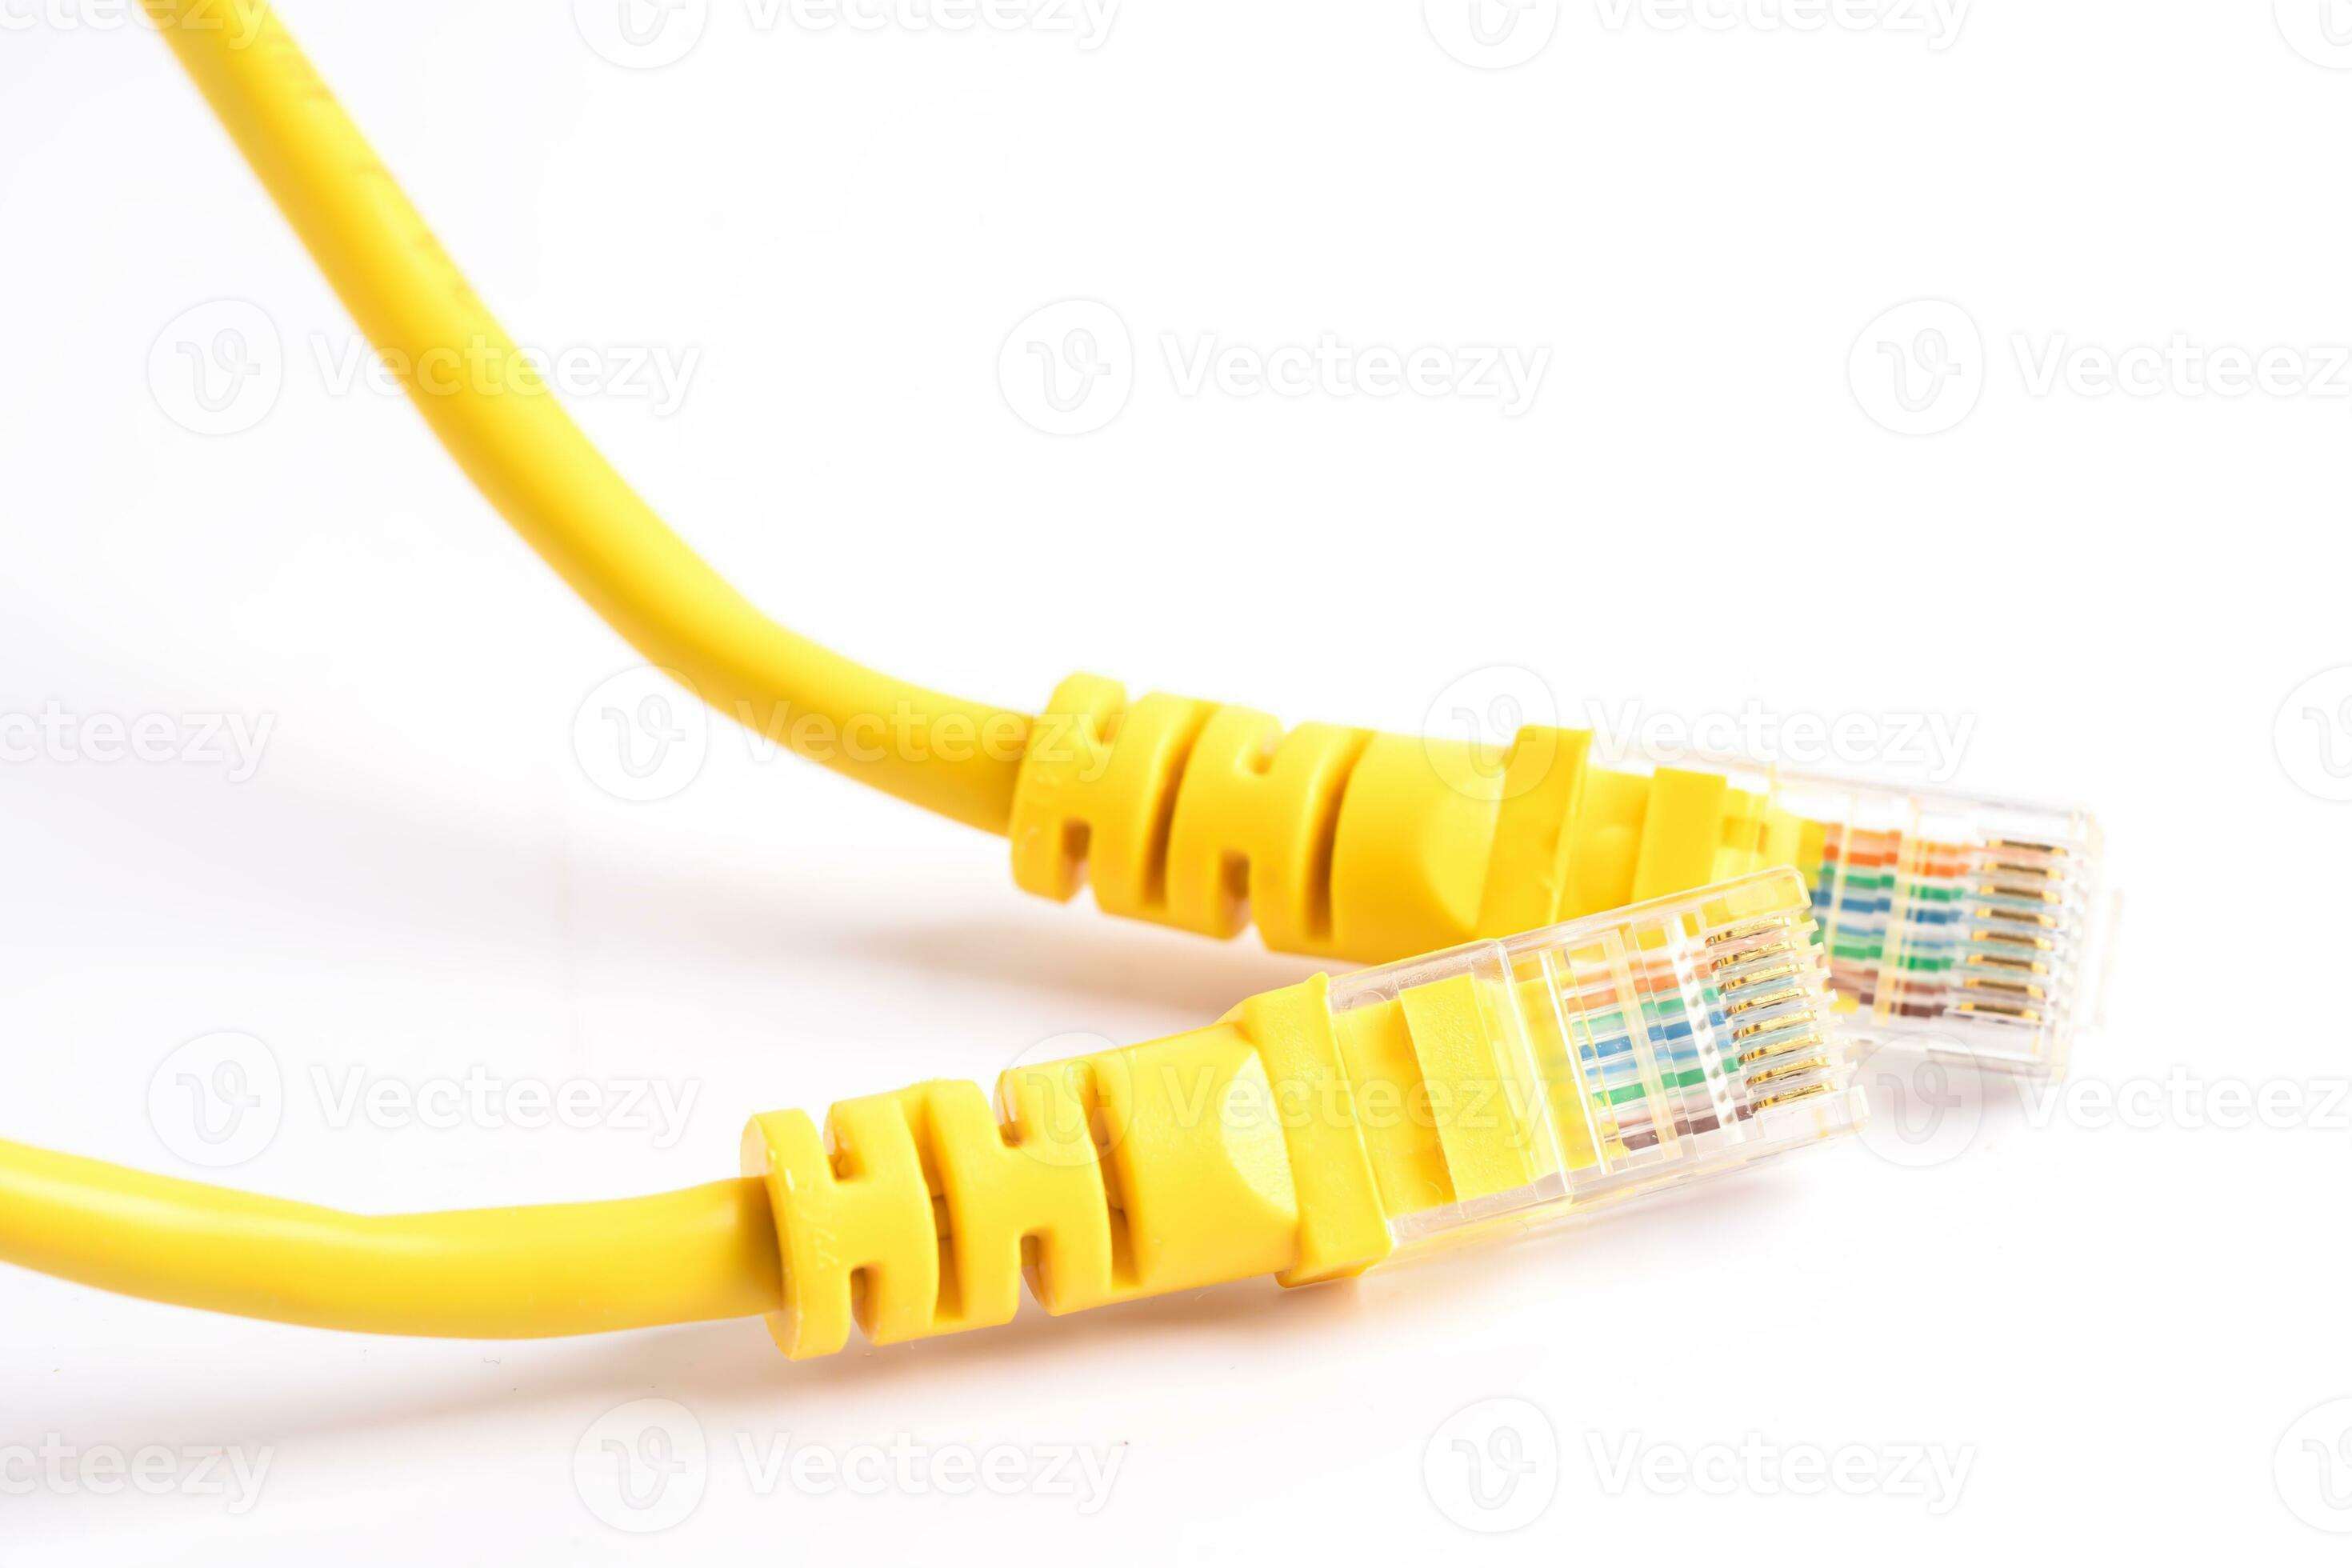 lan cavo Internet connessione Rete, rj45 connettore ethernet cavo. 26495884  Stock Photo su Vecteezy